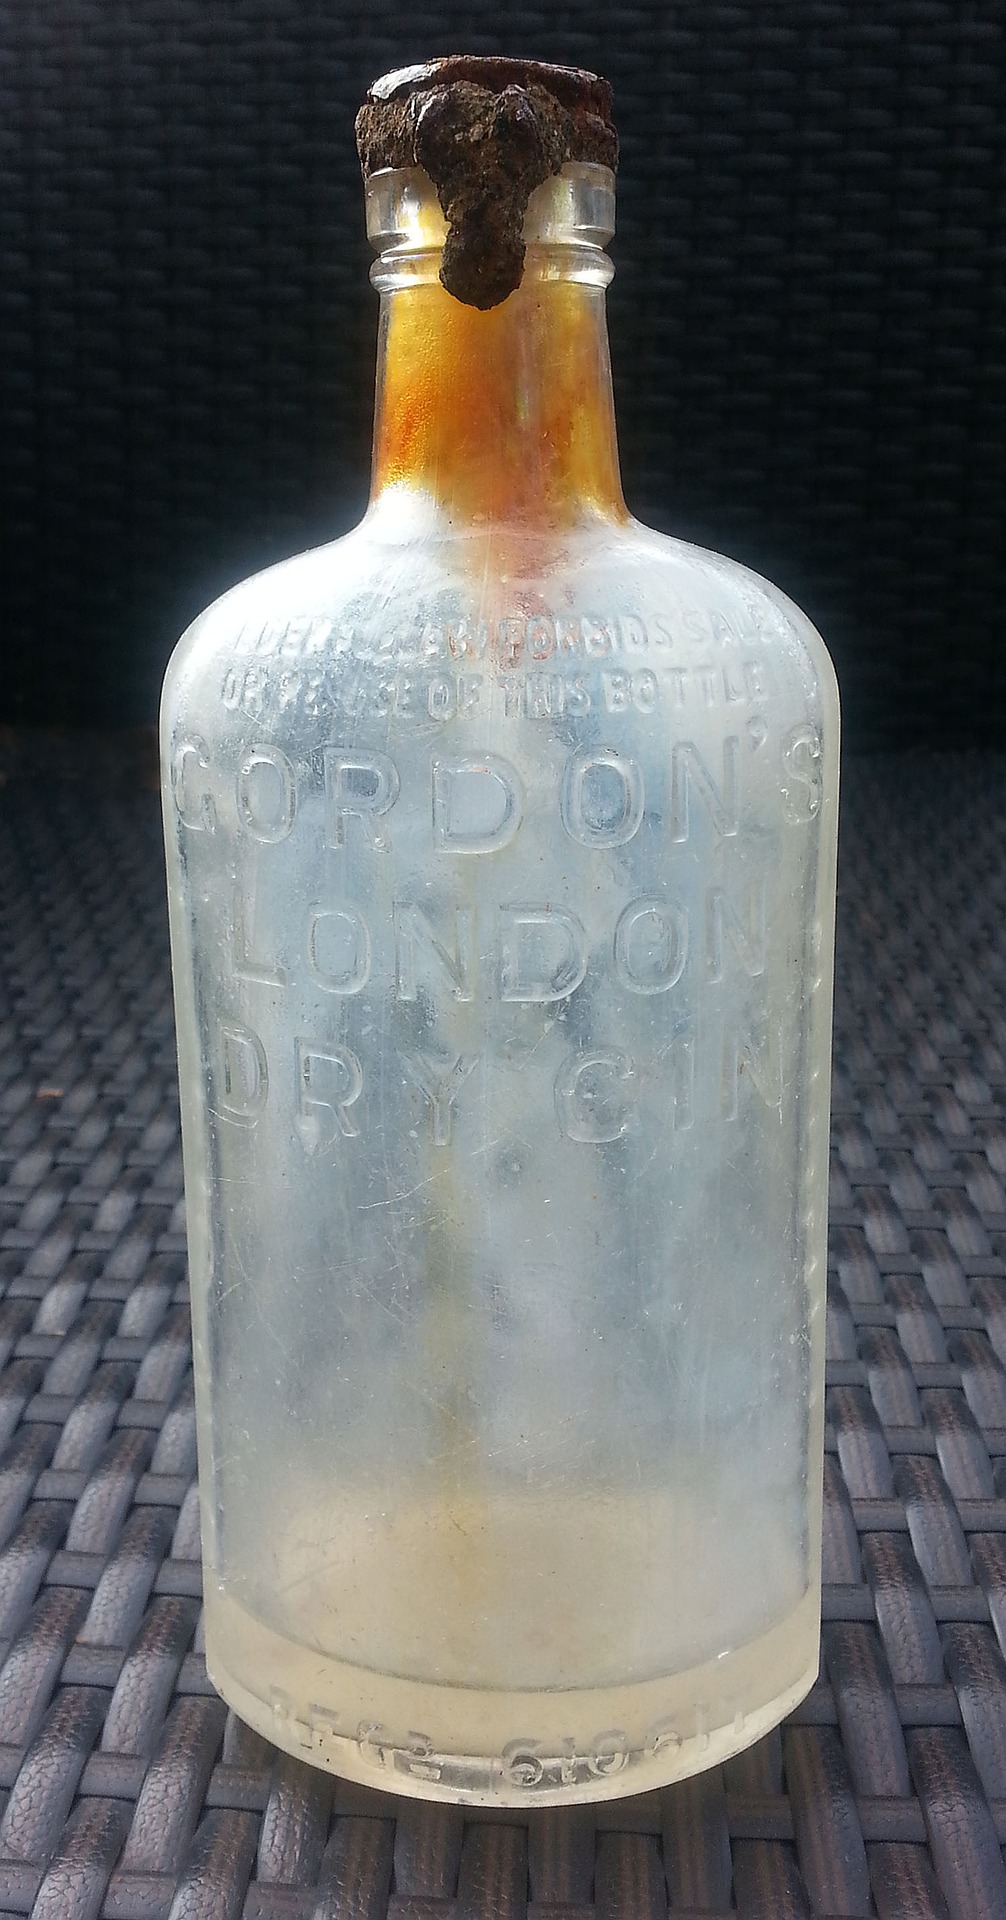 London Dry Gin 28 bottiglie da acquistare e gustare